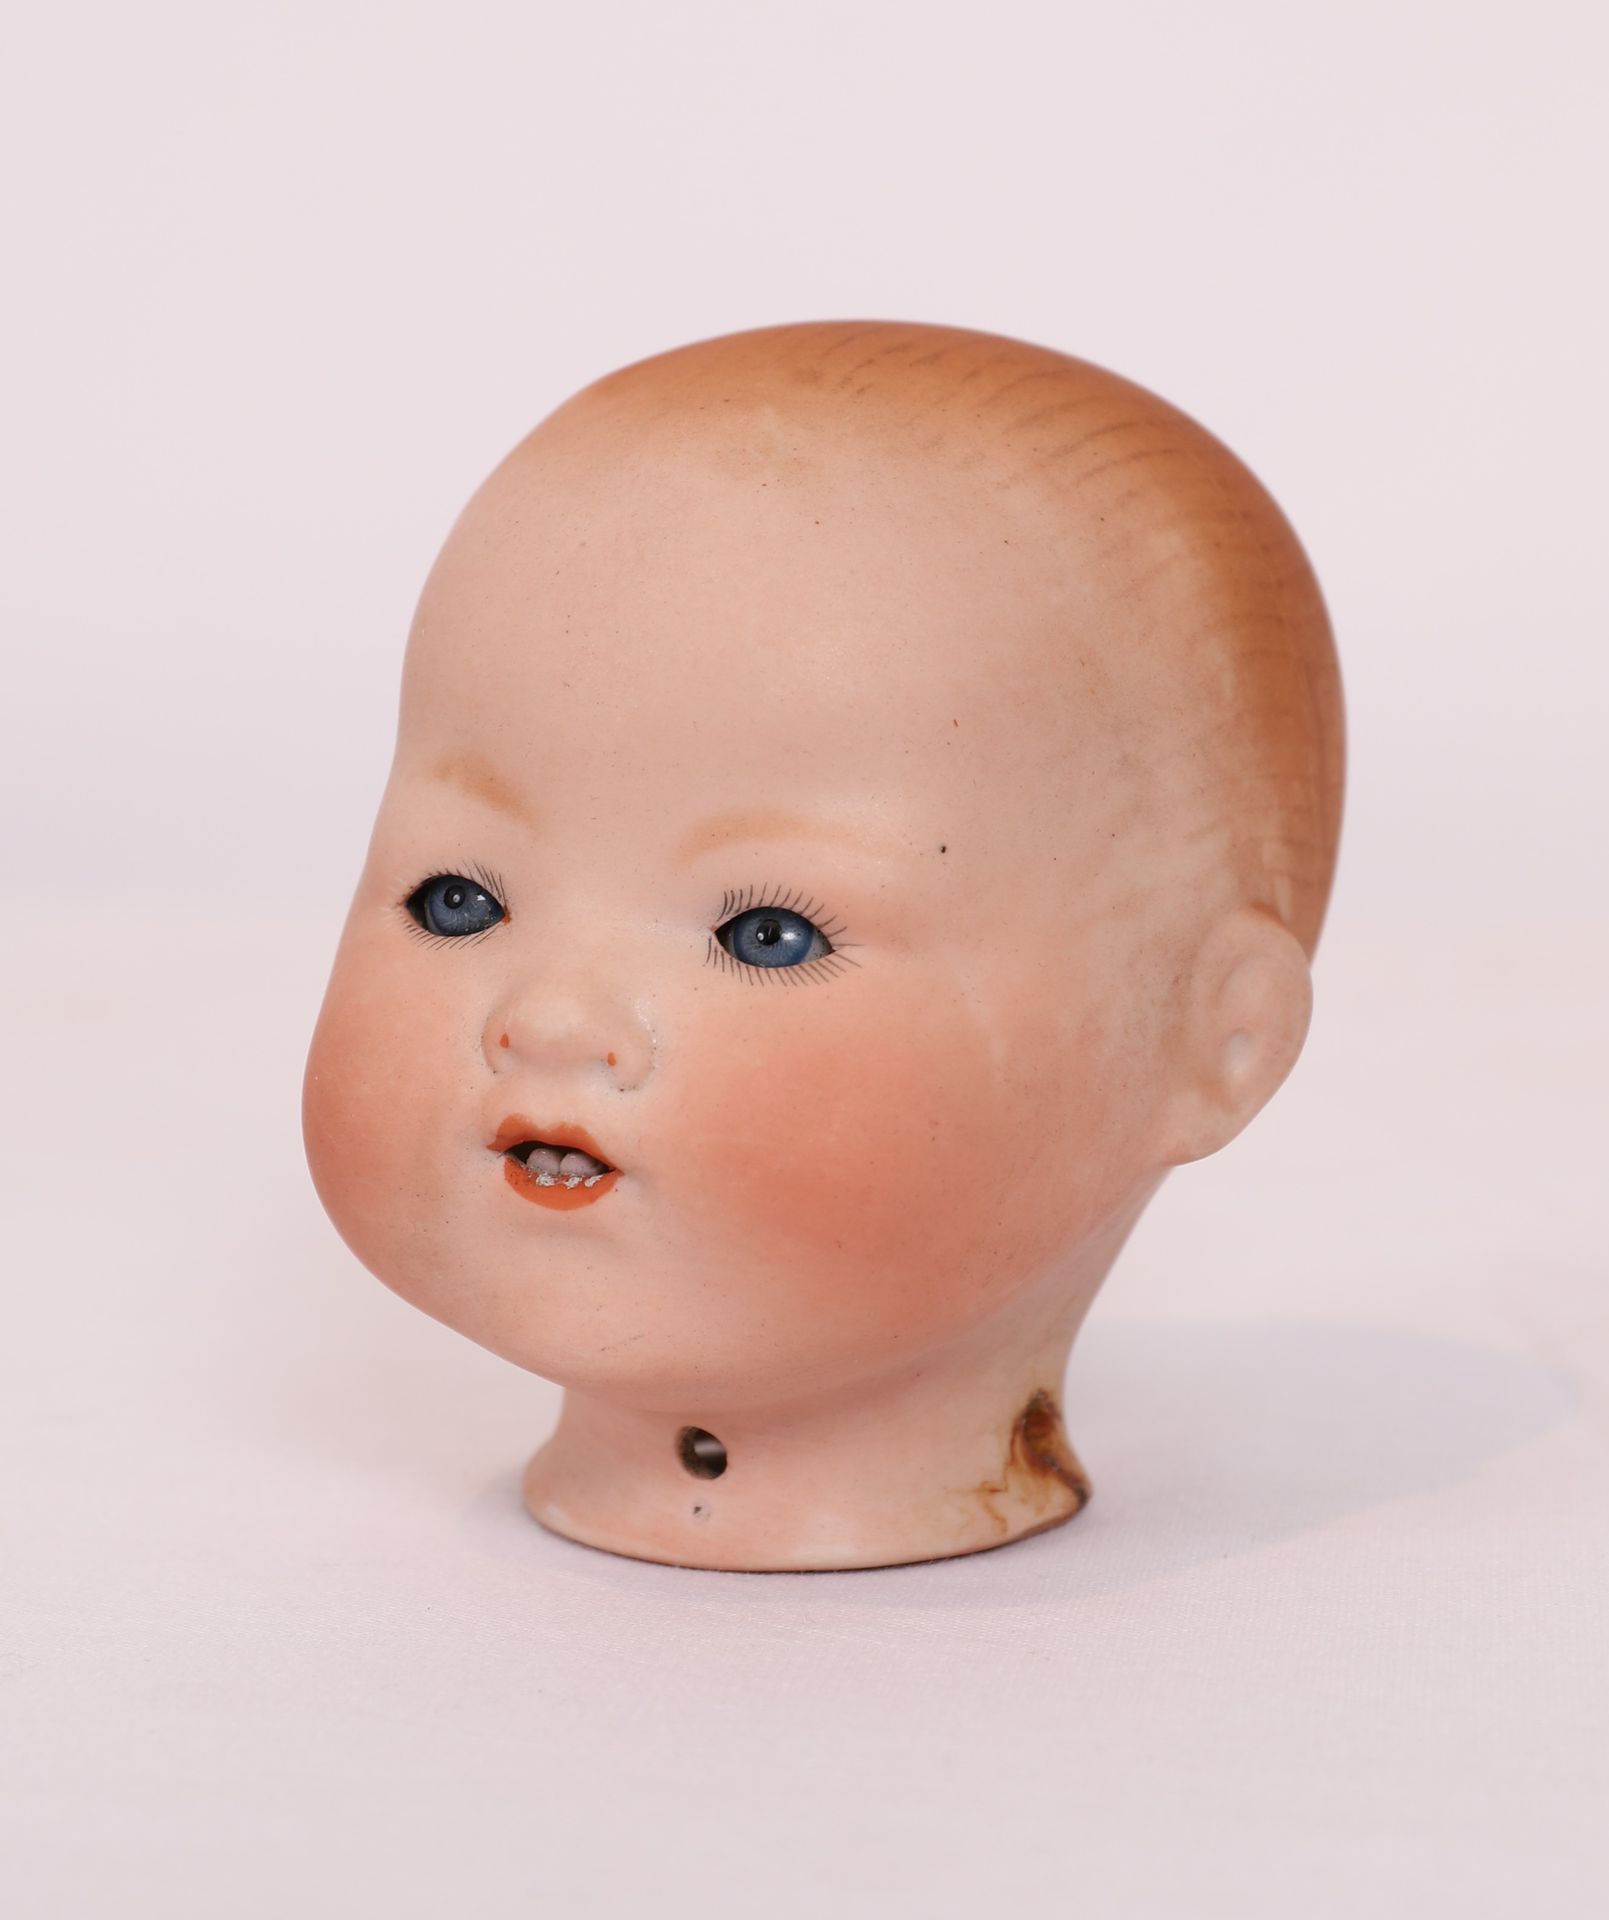 Null 阿曼德-马赛的瓷娃娃头

多色头，张嘴，可见牙齿，眼睛有内部杠杆装置

颈部签有 "AM"，代表德国阿尔芒-马赛，还有尺寸。

高：9.5厘米

使用&hellip;